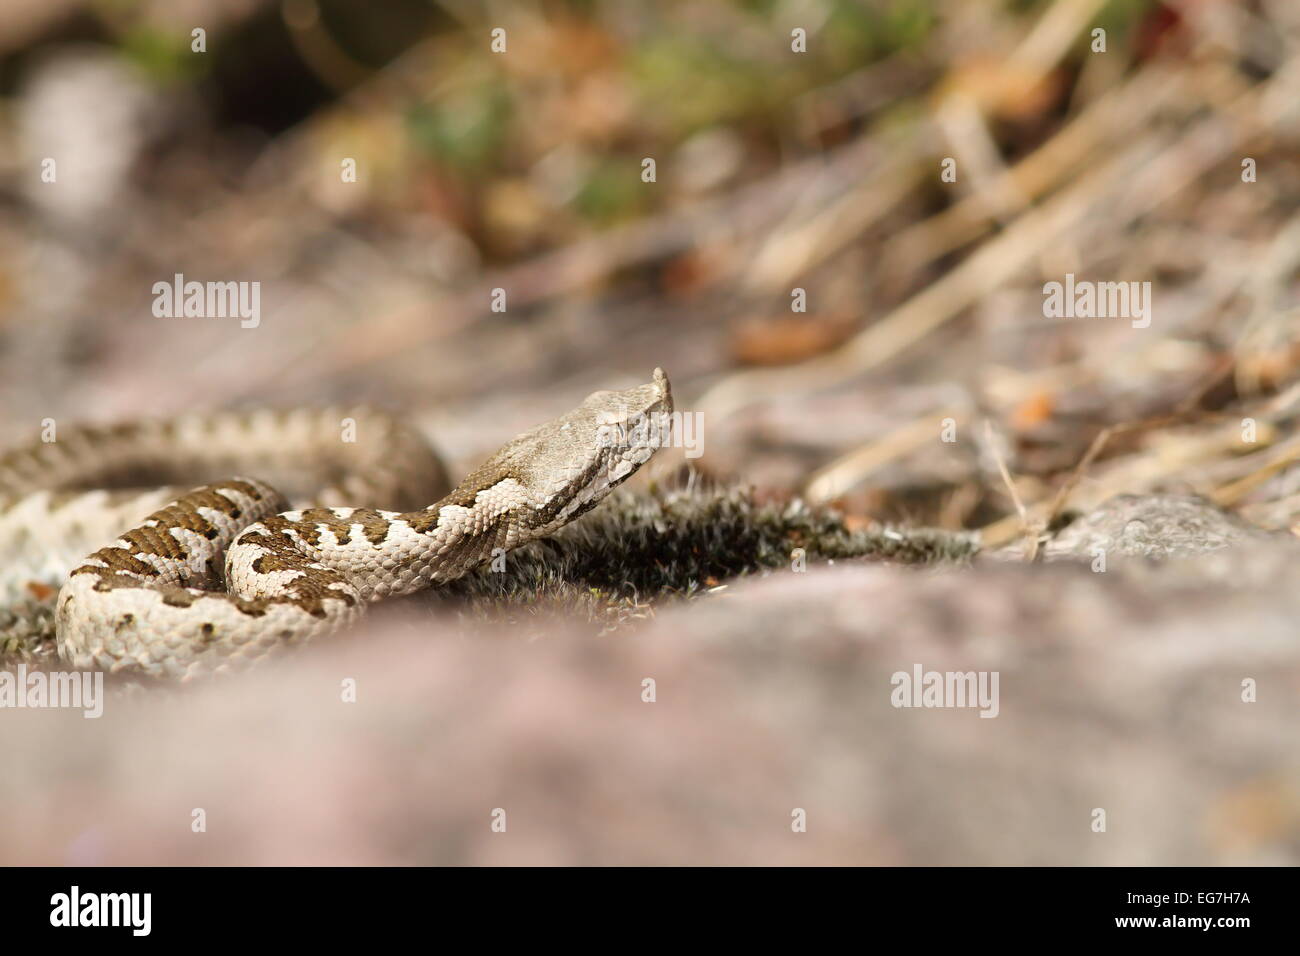 Vipère à cornes européenne ( Vipera ammodytes ), jeune spécimen sauvage photographié en Roumanie Banque D'Images